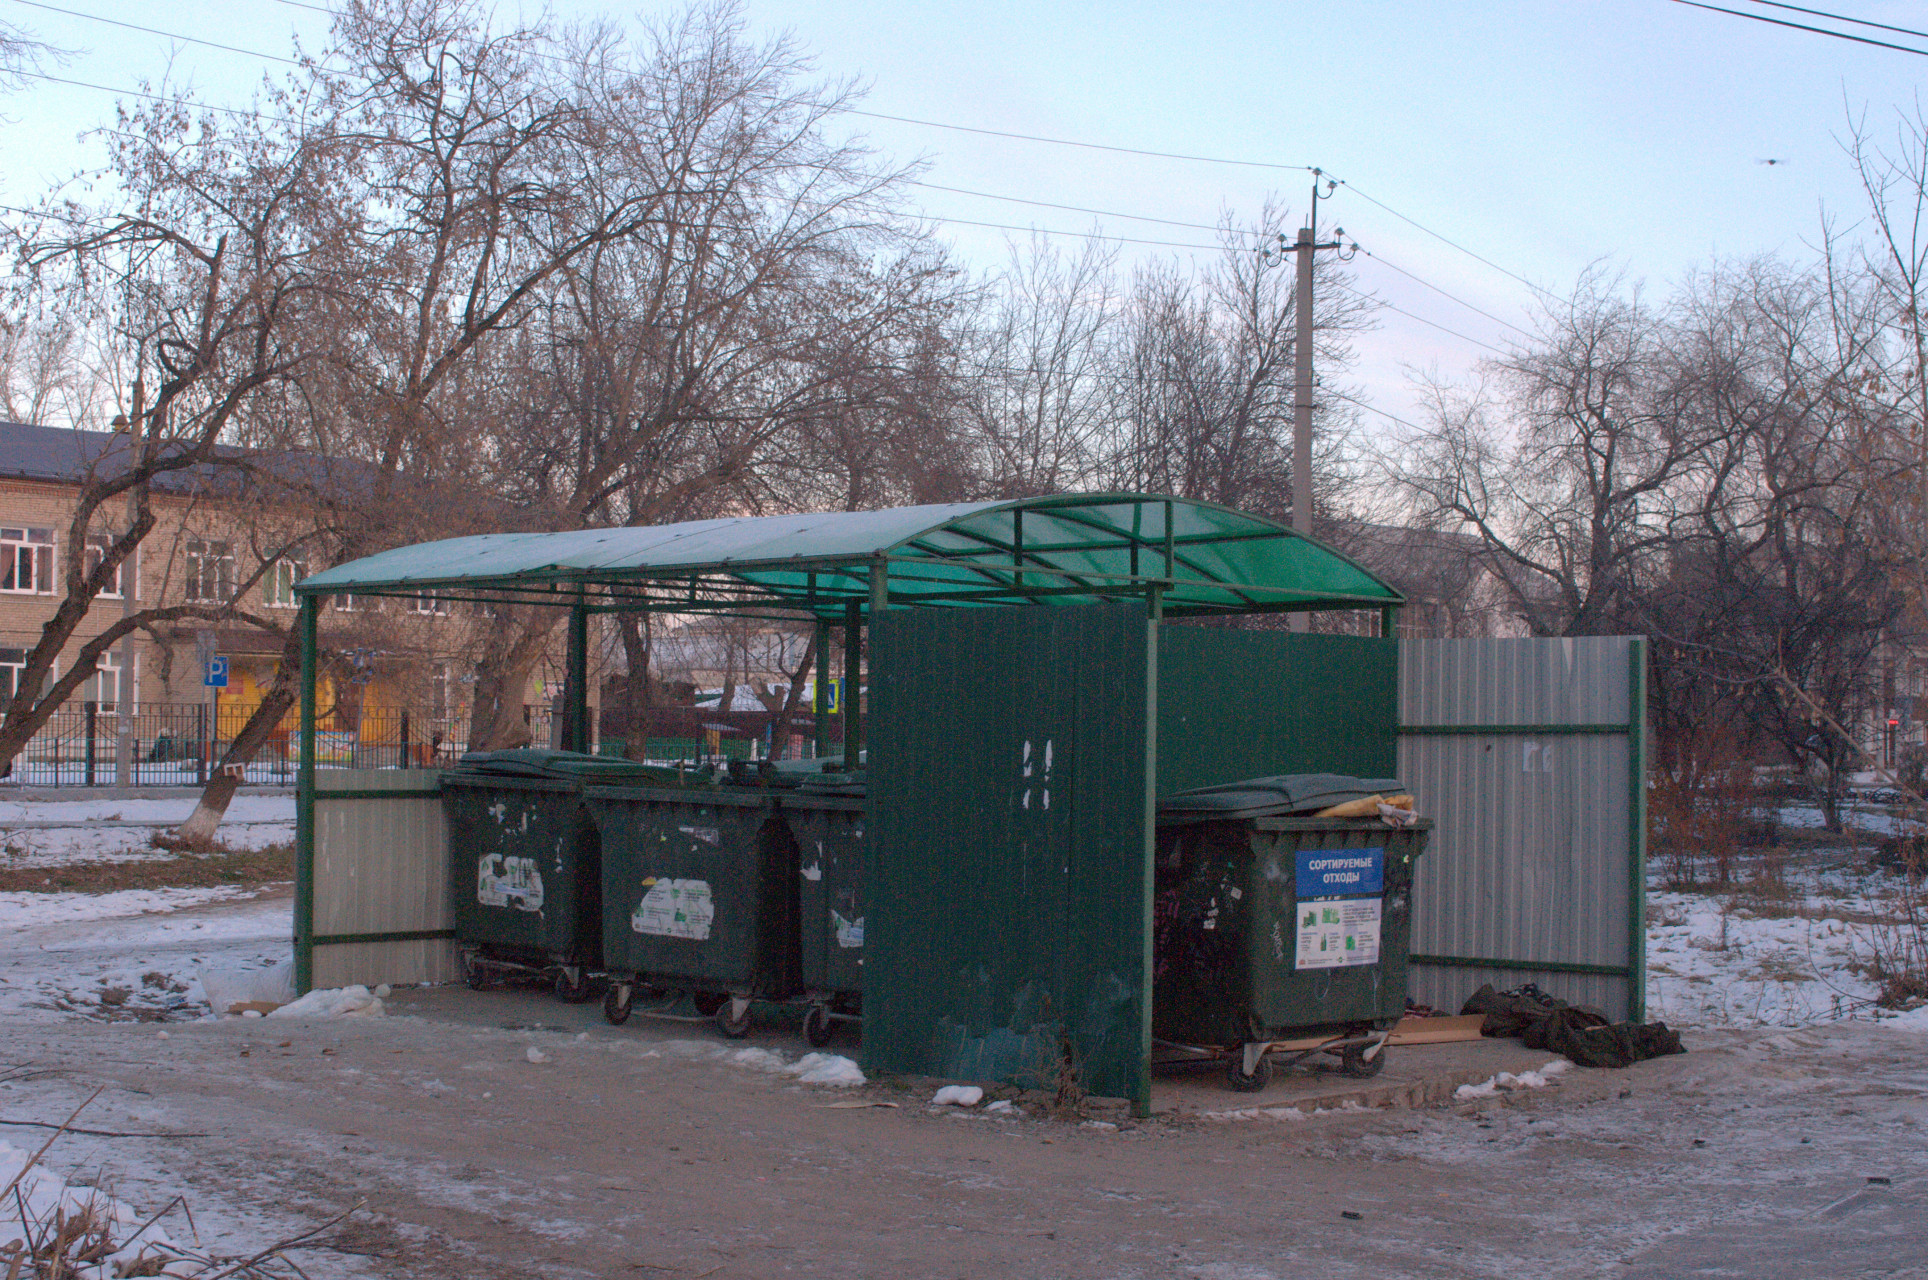 Площадка на ул. Комсомольской в городе - “сложносочиненная”. Здесь, в отдельном блоке, установлен бак для для раздельного сбора мусора. Но сортировки отходов артемовцы не очень-то придерживаются, поэтому спецбак обычно переполнен самыми обычным мусором. Как и другие подобные, установленные для сортировки.